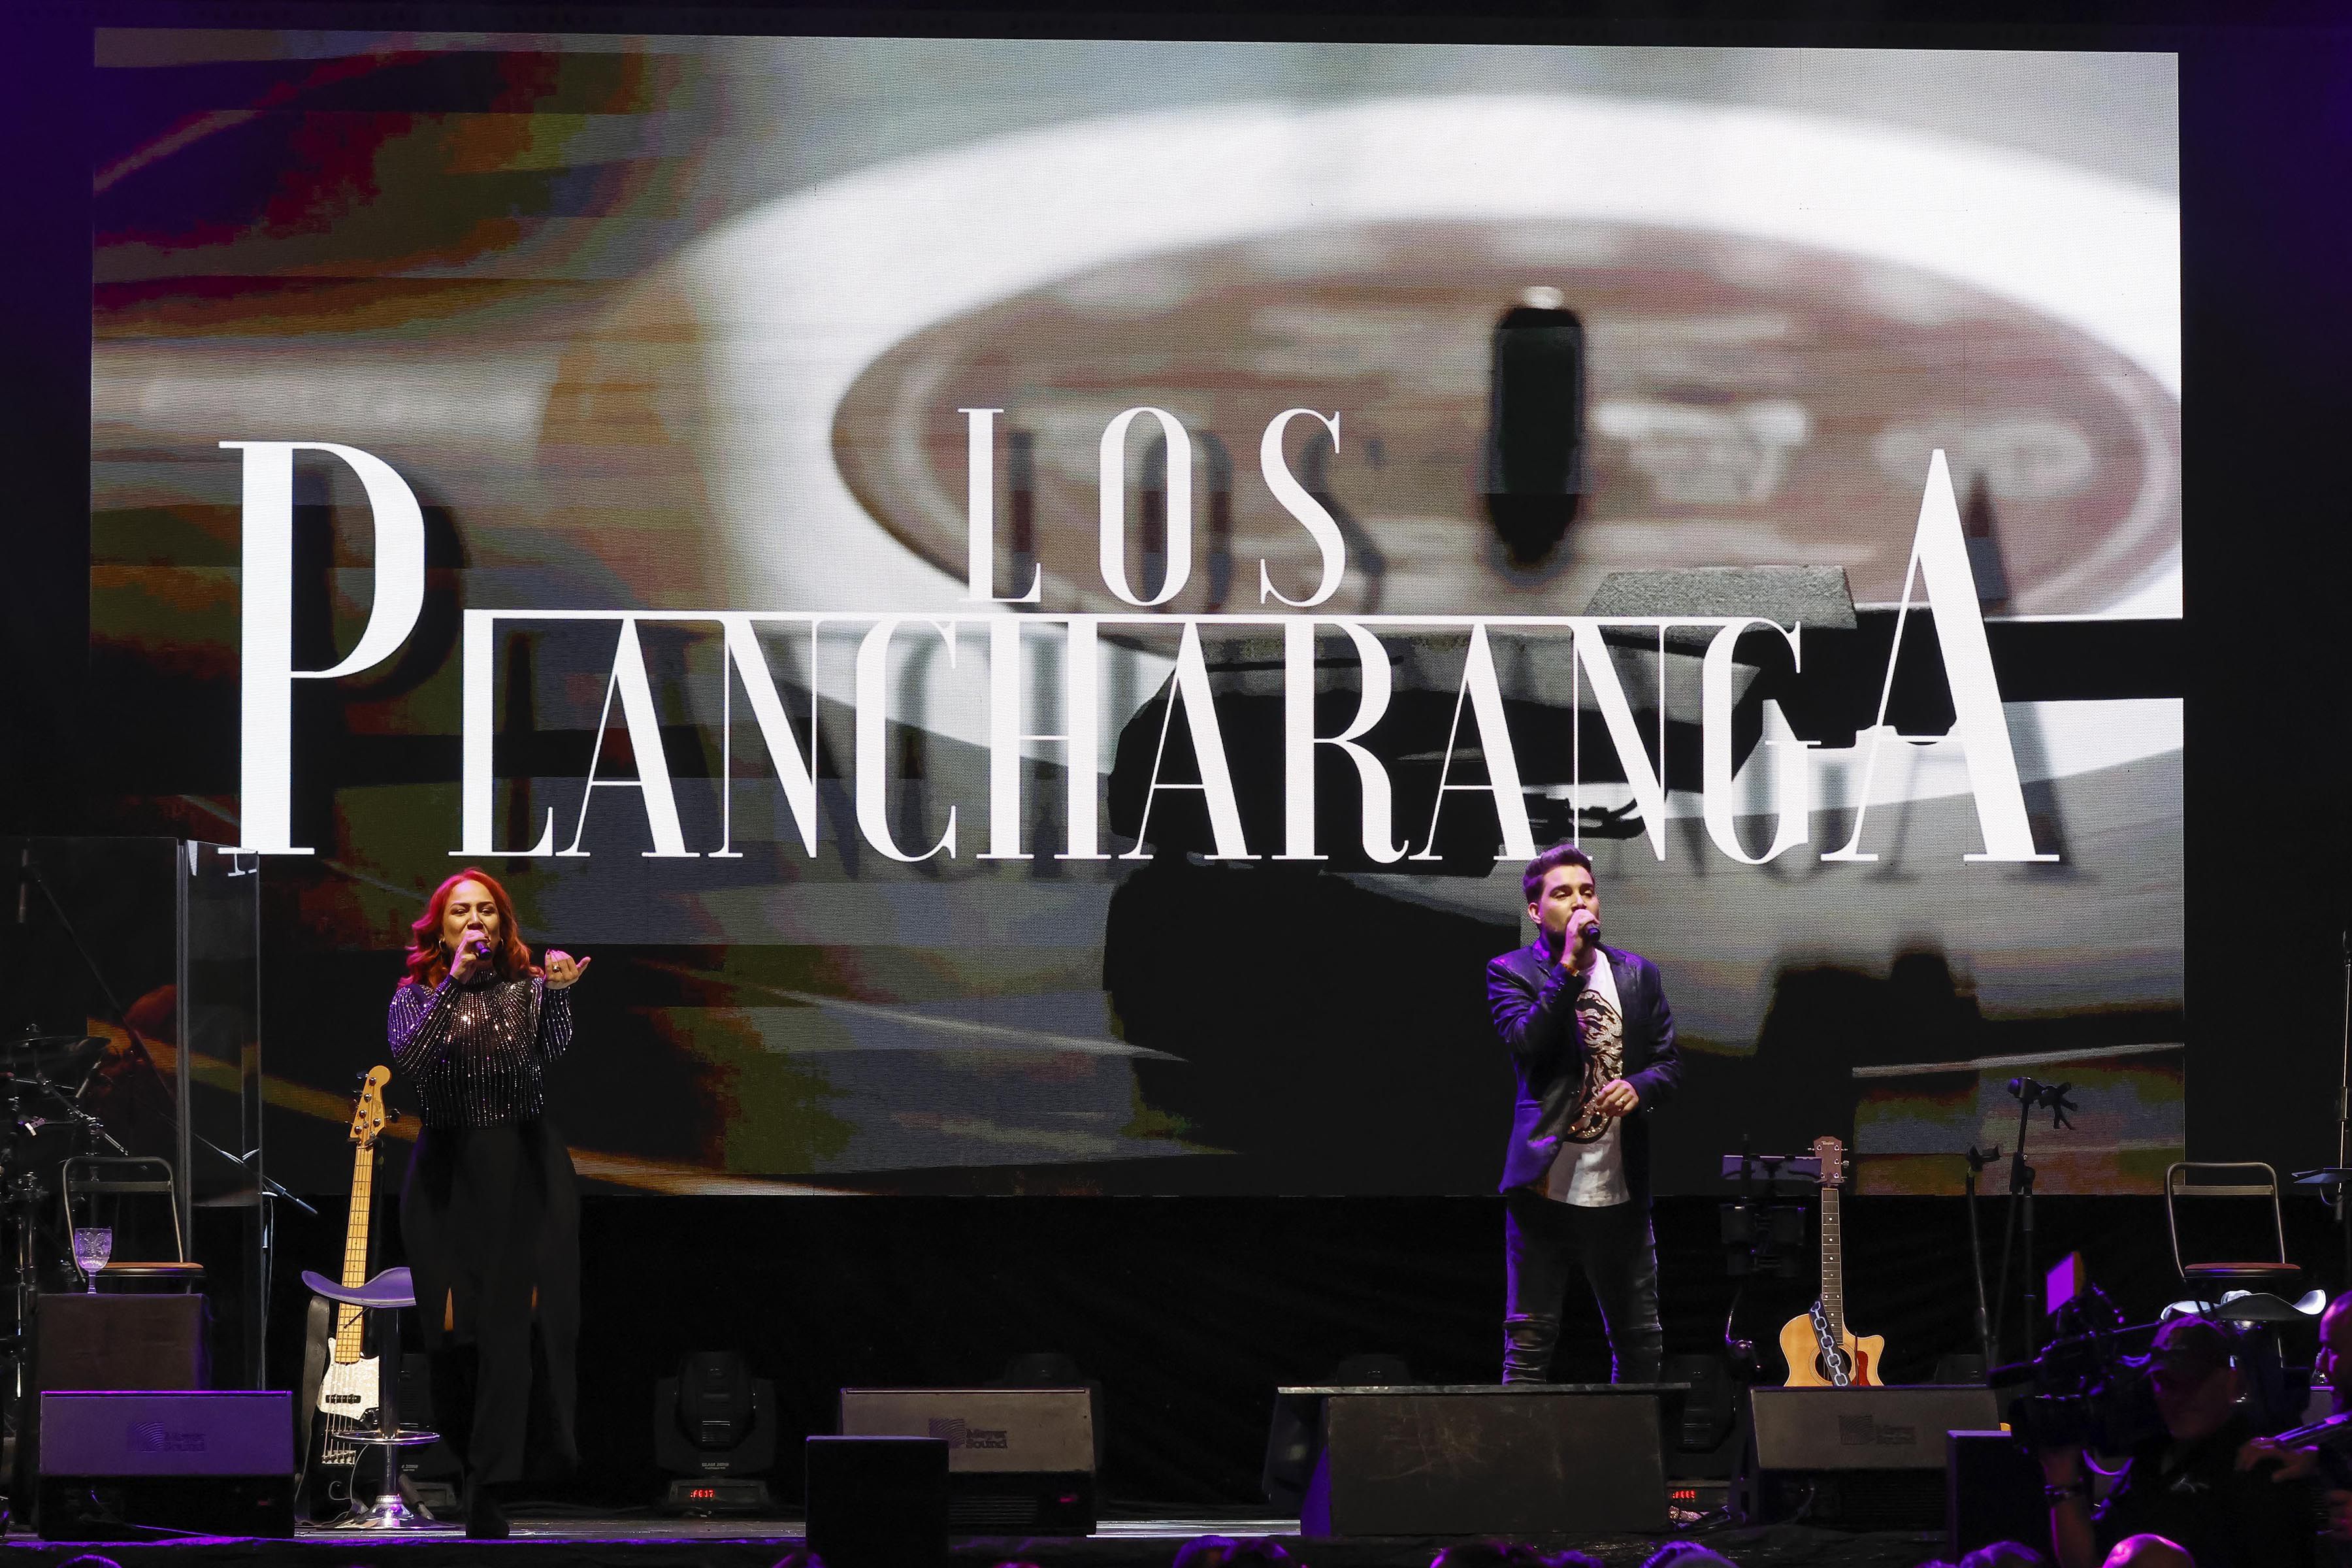 Los costarricenses de Plancharanga fueron los artistas nacionales invitados. Ellos abrieron el concierto de Pimpinela en Costa Rica. 